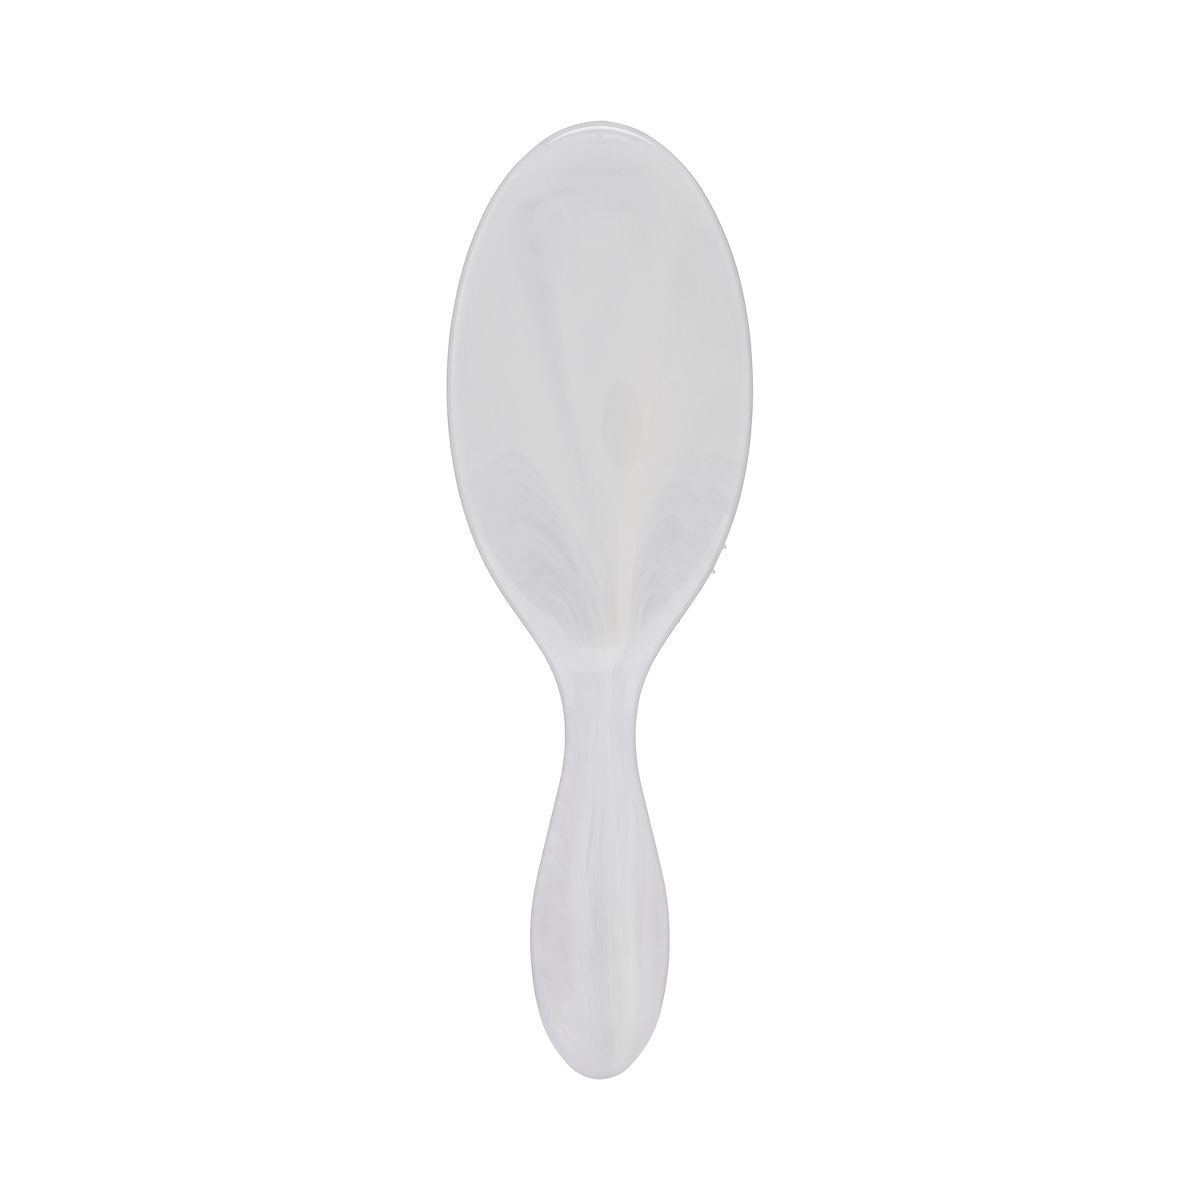 Wet Brush Original Detangler Hair Brush - Pearlized White | Target